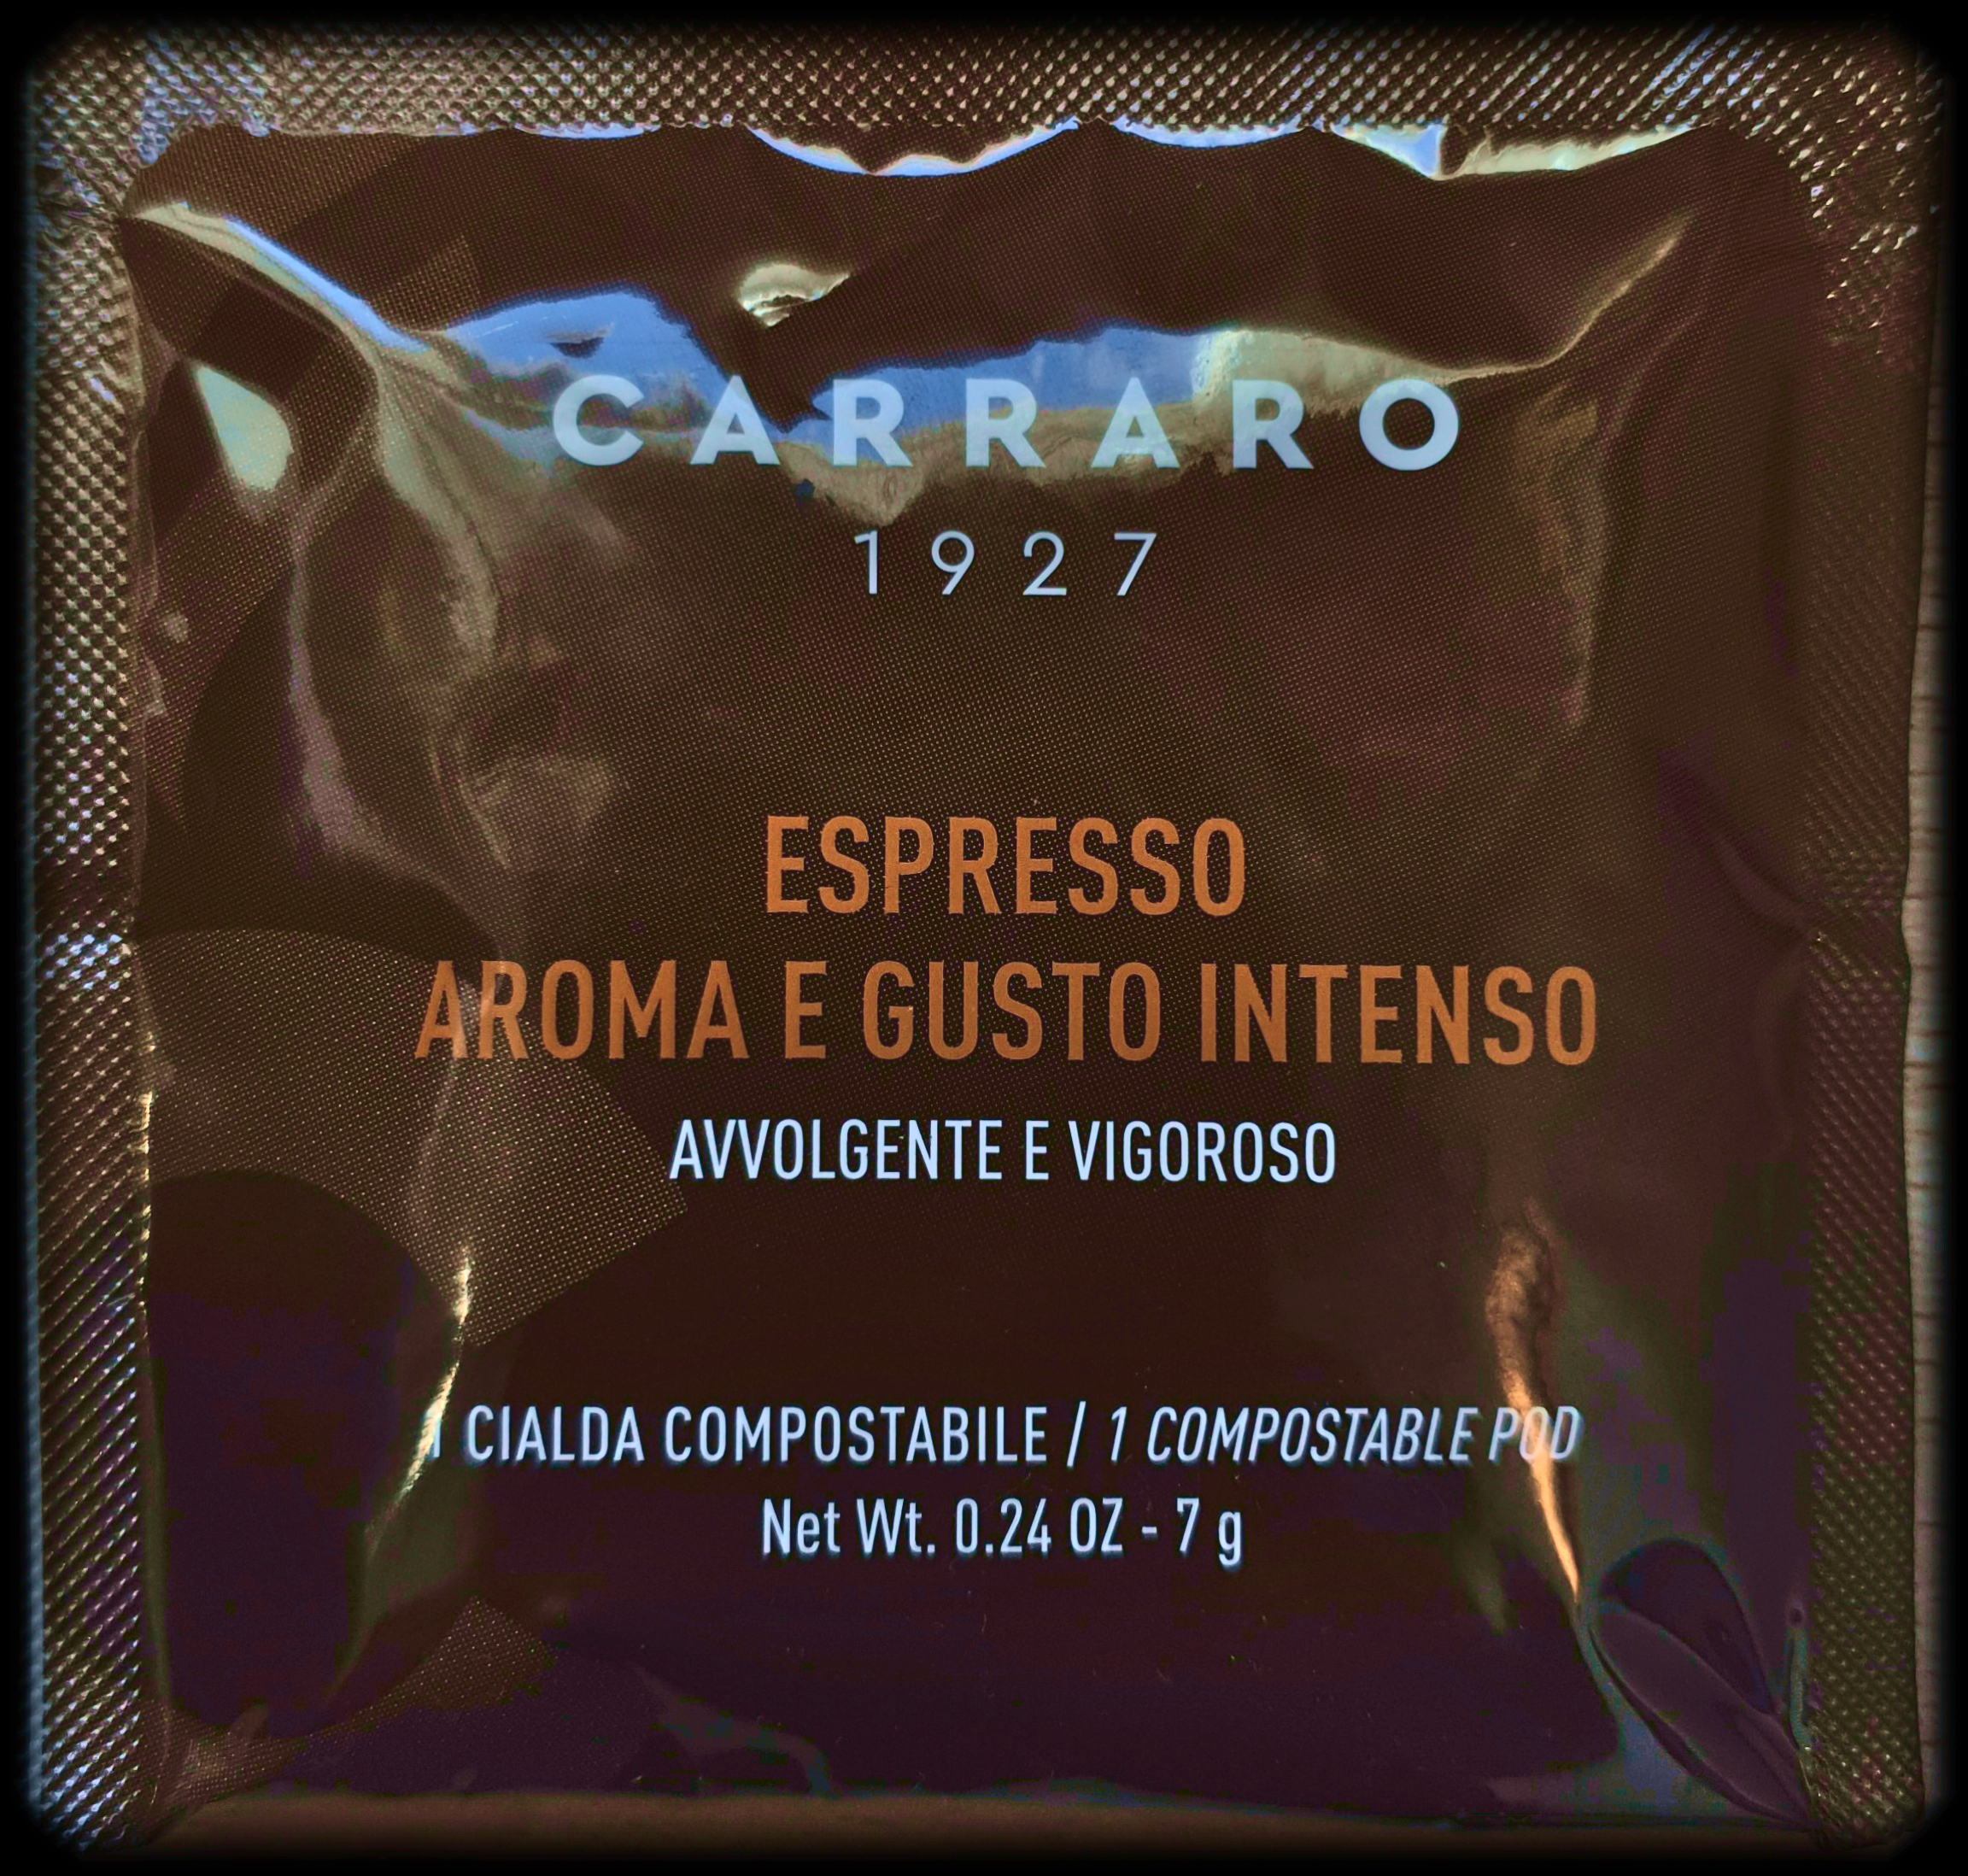 Кофе в чалдах Carraro Aroma e Gusto Intenso (Карраро Арома э Густо Интенсо)